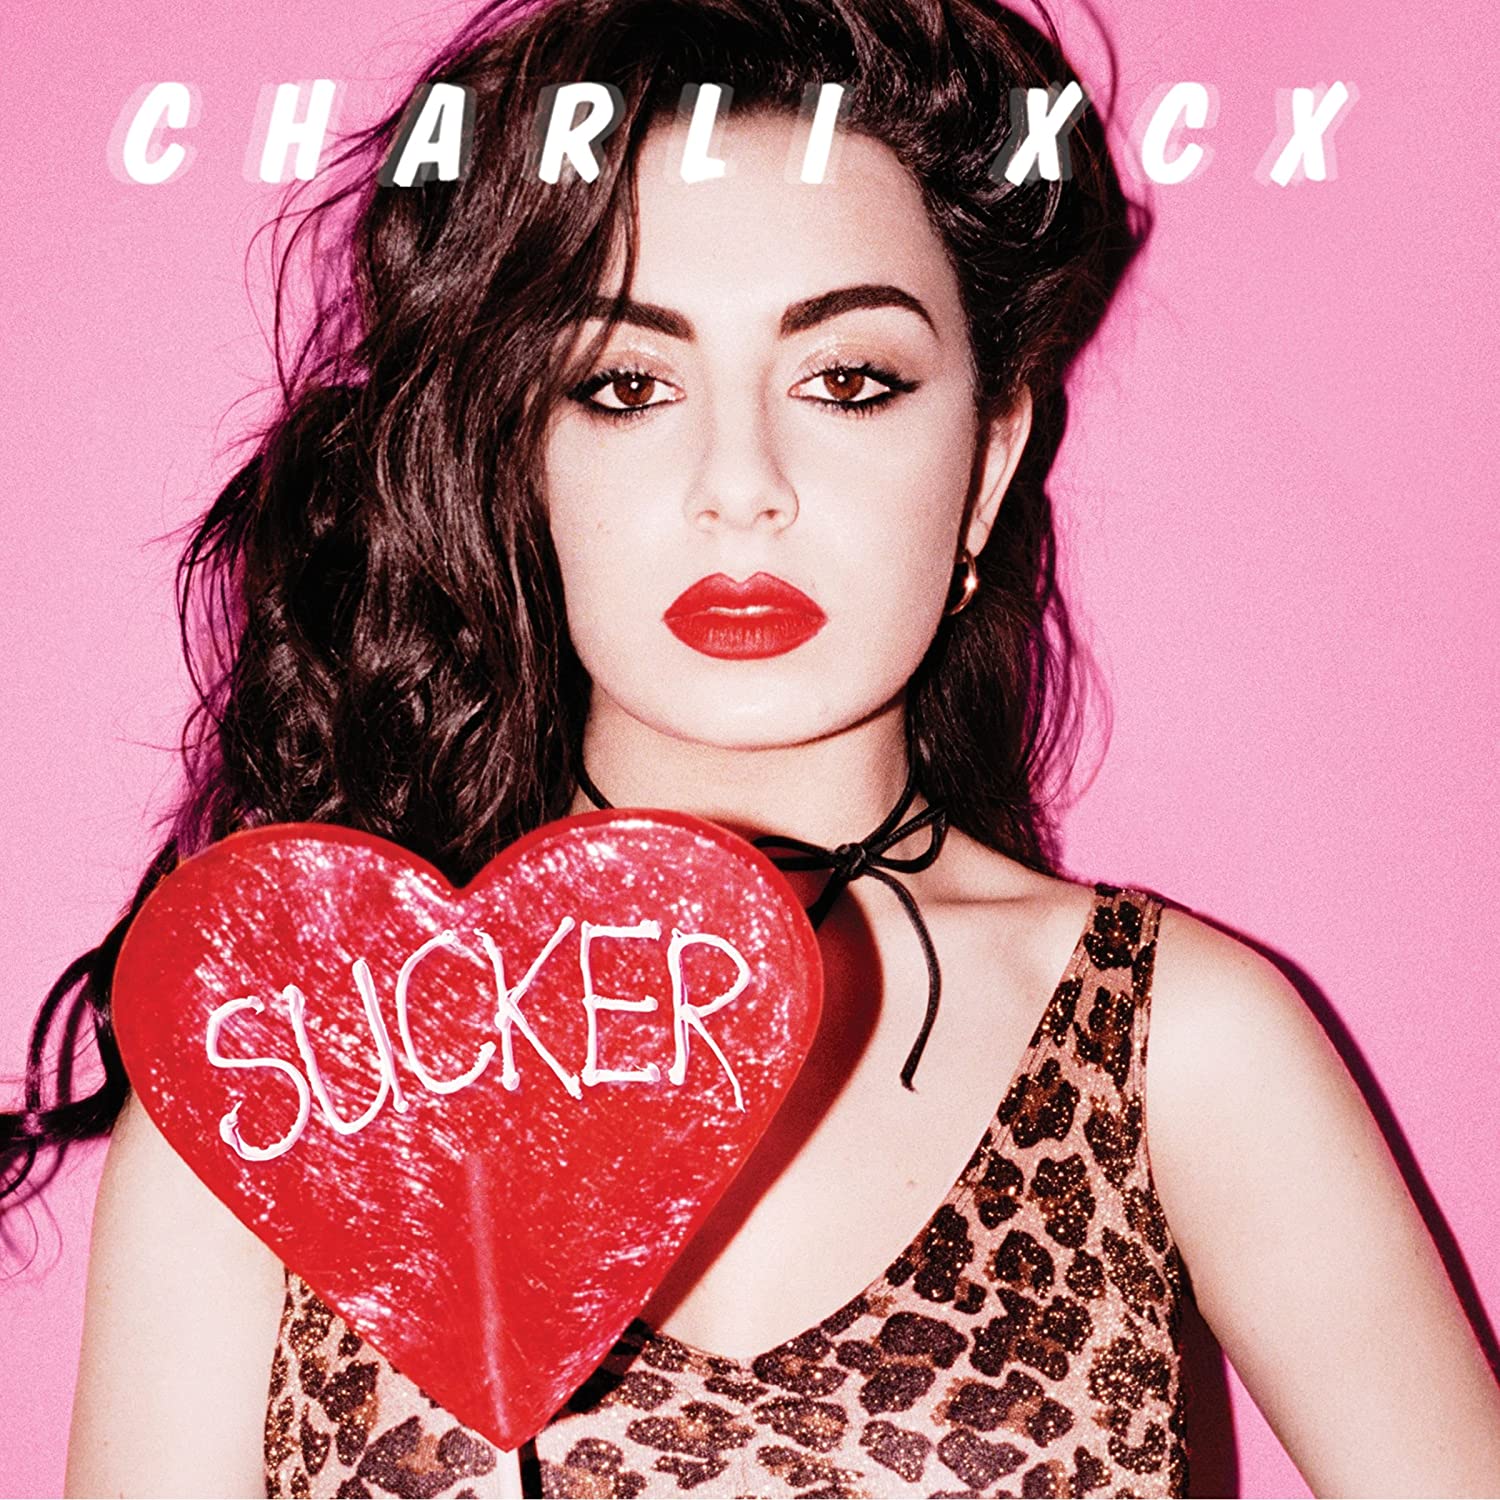 Charli XCX Sucker cover artwork